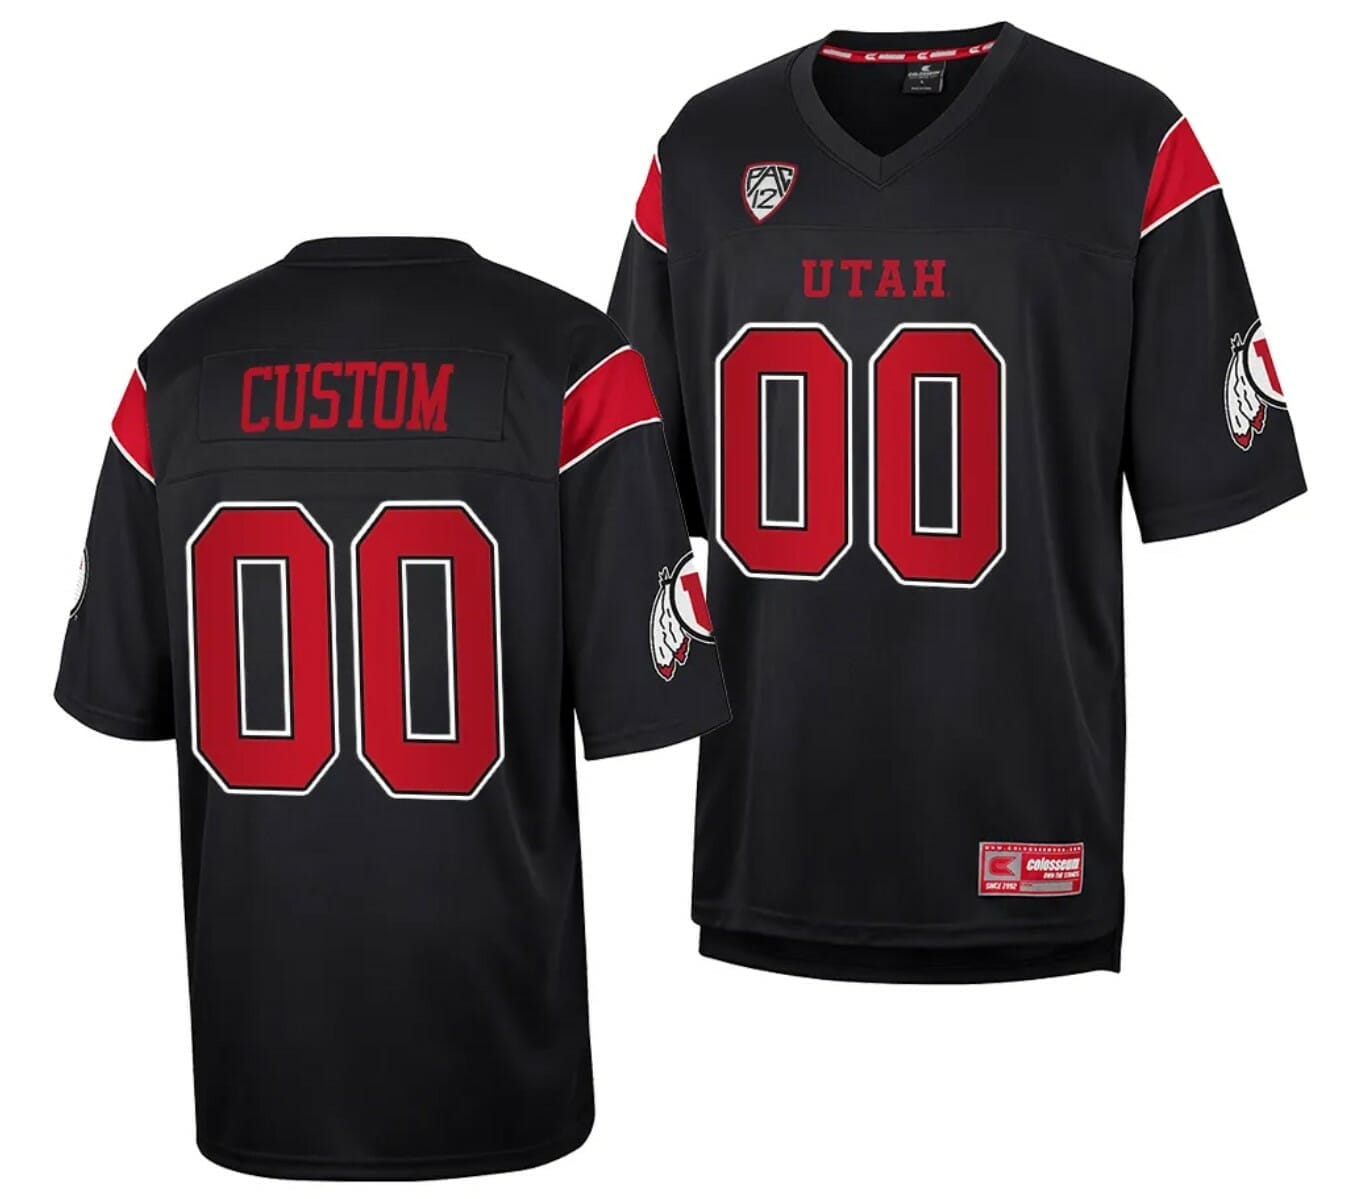 Utah Utes Style Customizable Football Jersey – Best Sports Jerseys